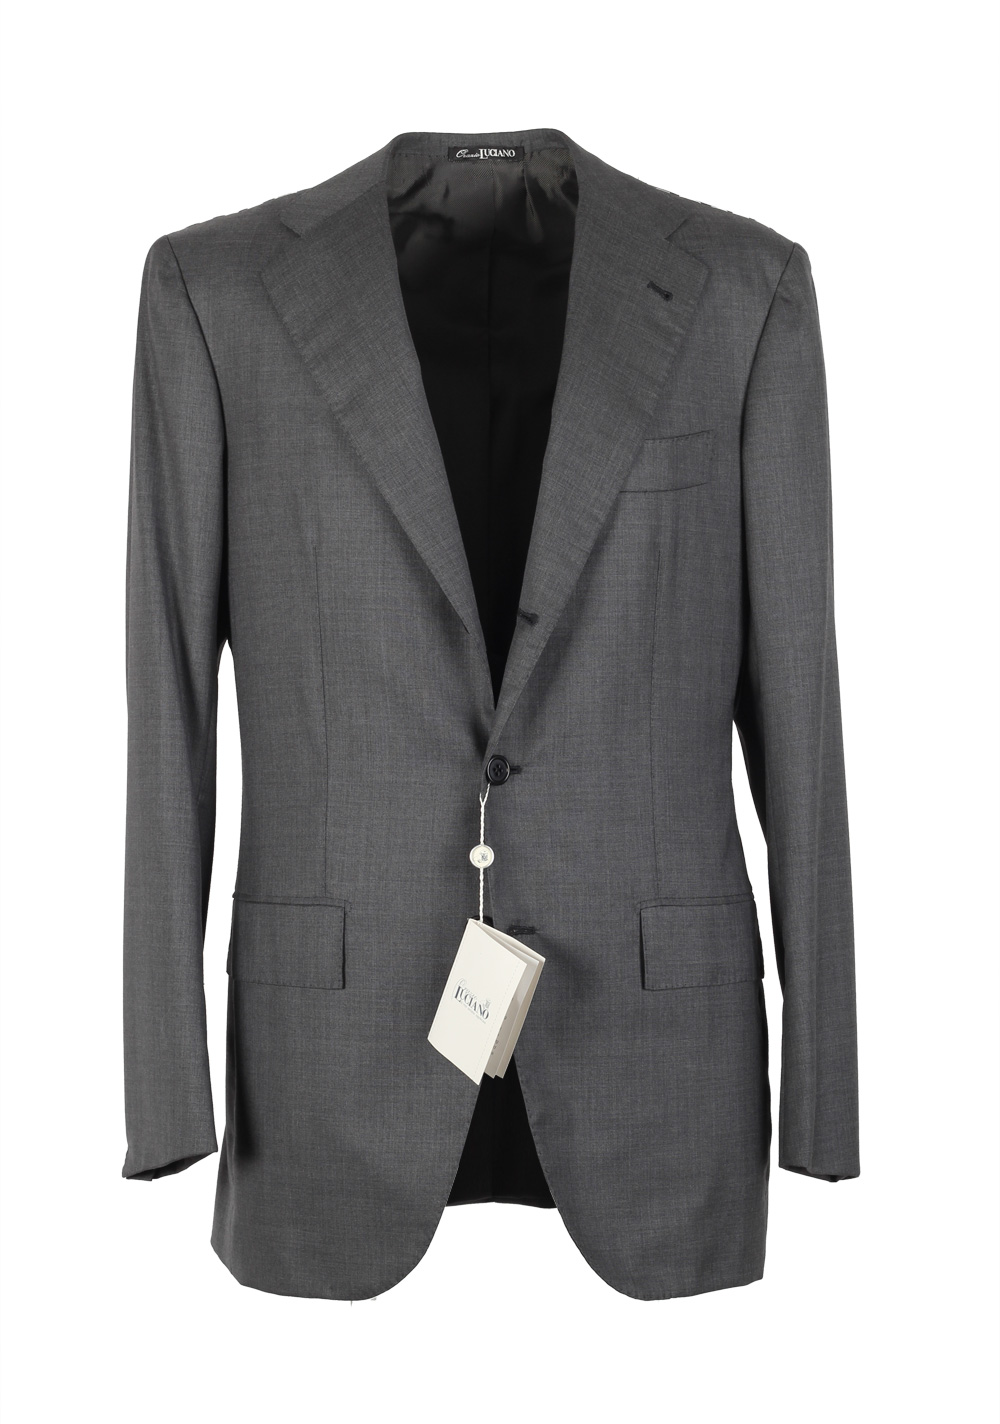 Orazio Luciano La Vera Sartoria Napoletana Suit Size 46L / 36L U.S.